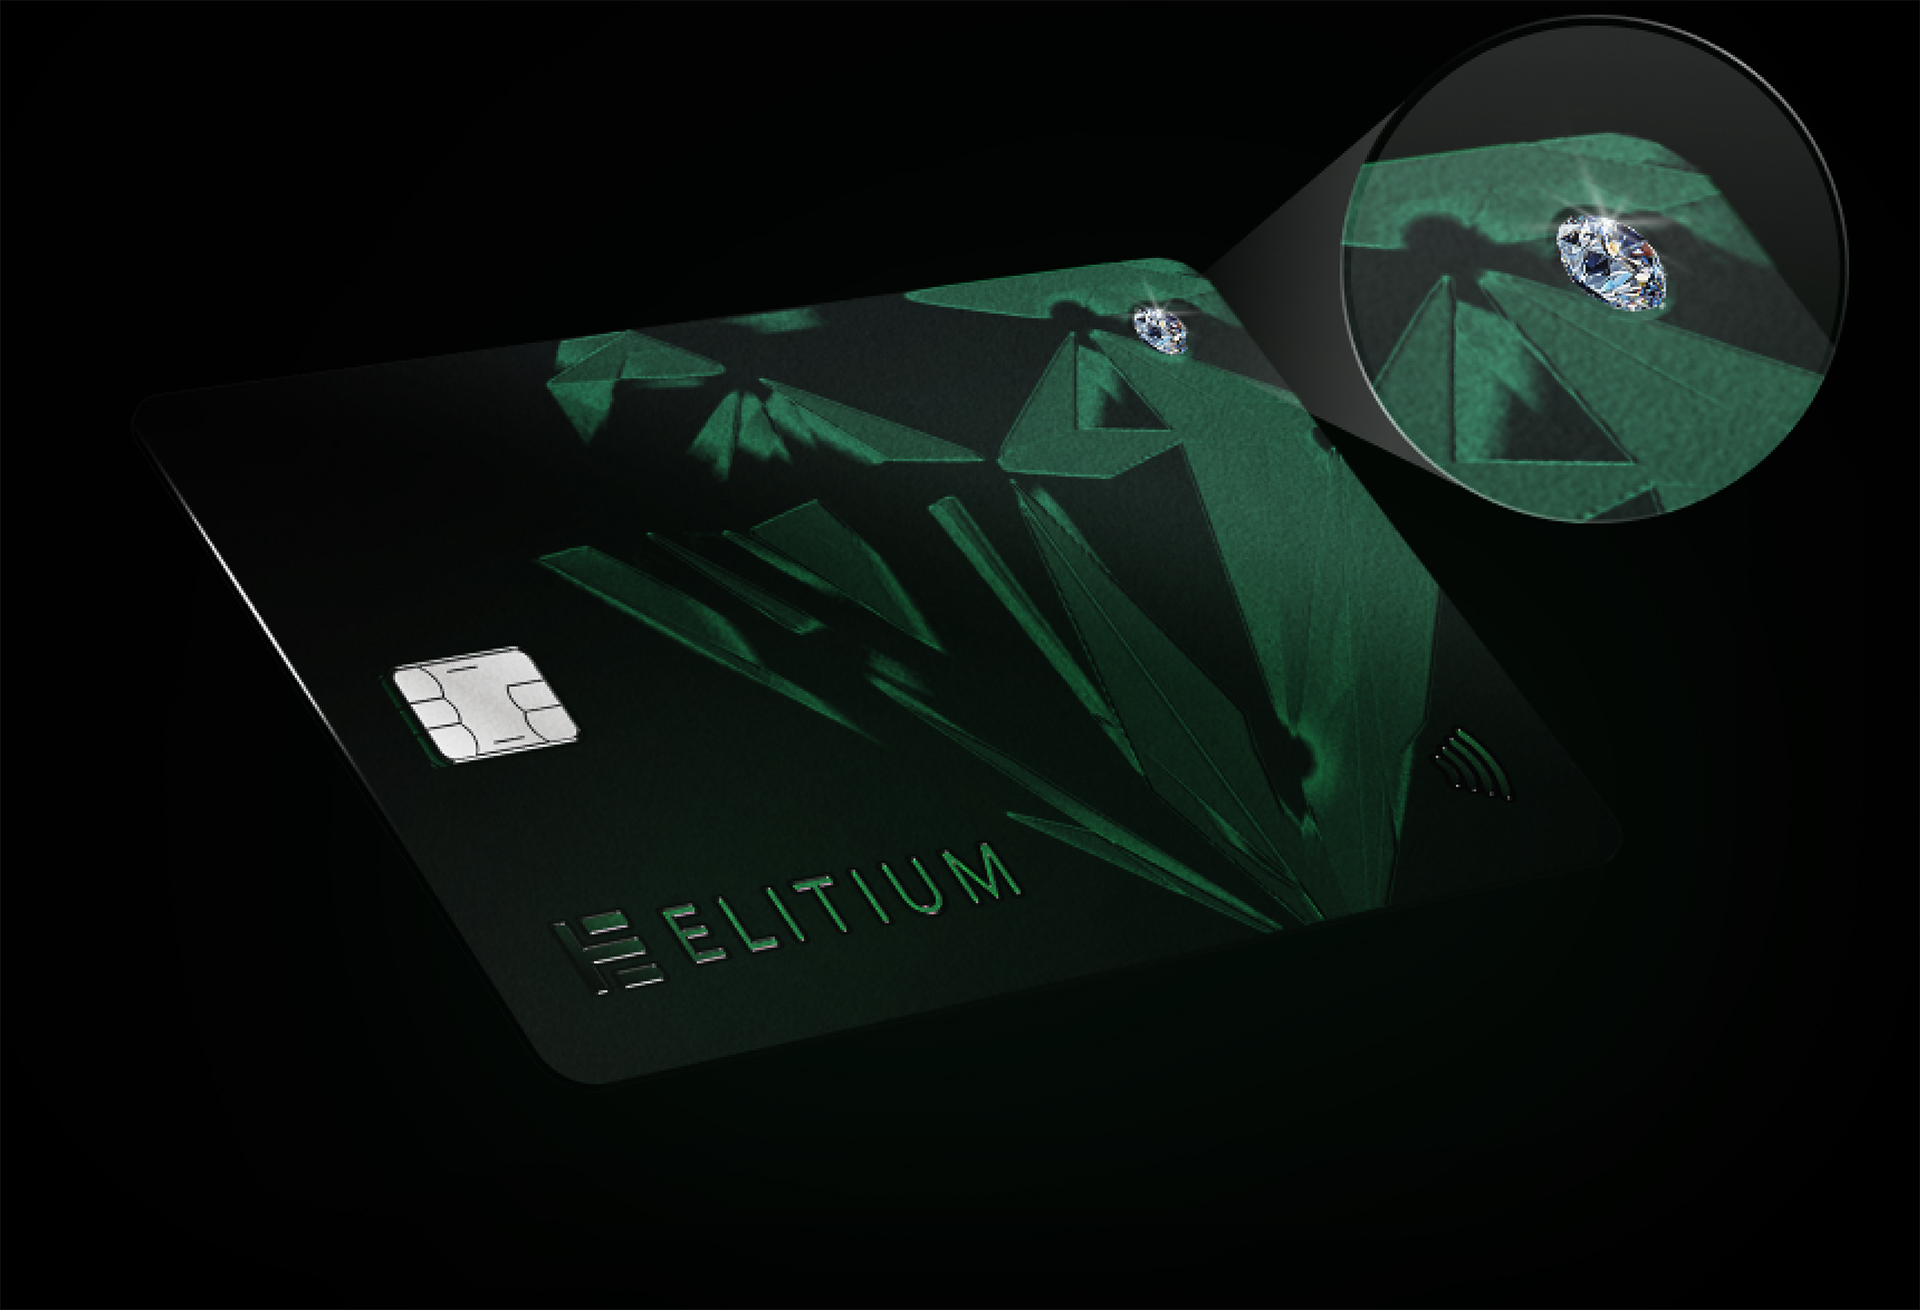 Elitium Crypto Card